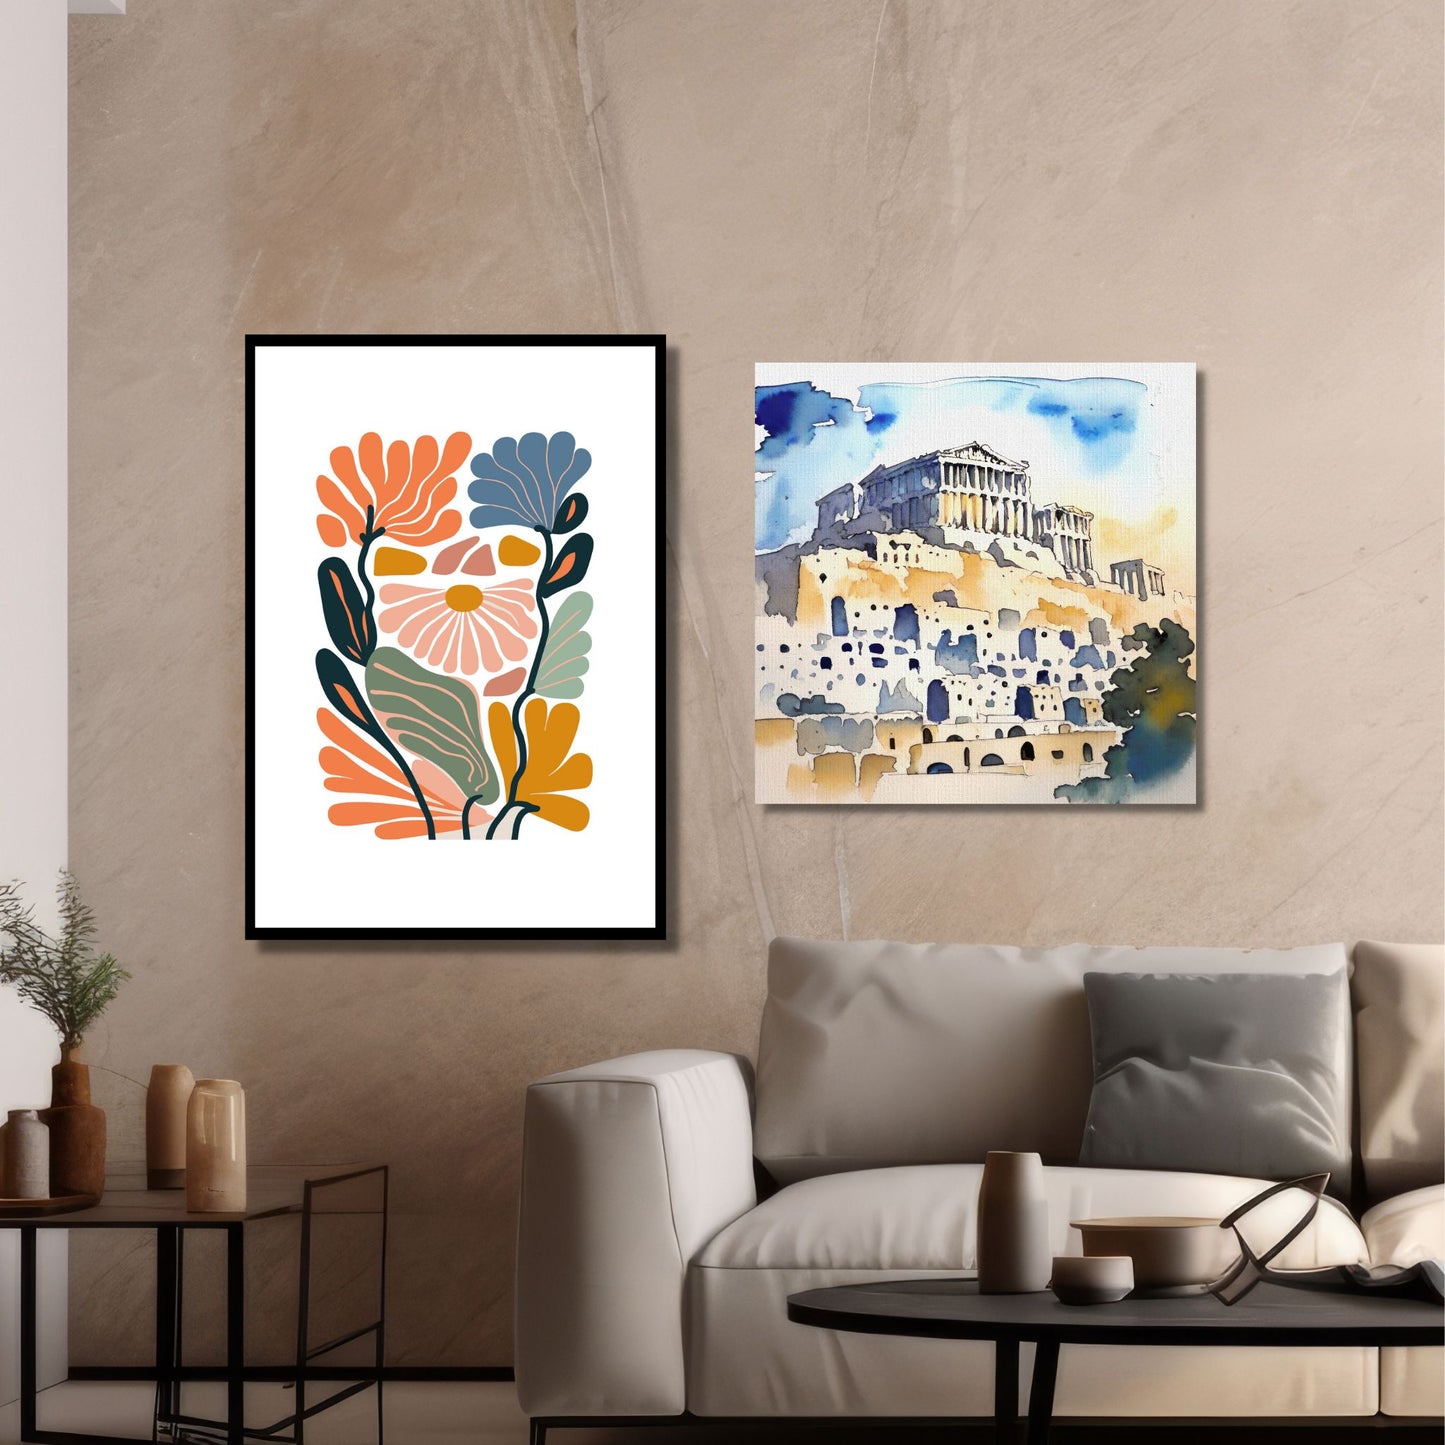 Denne plakaten er 1 av 3 dekorative grafiske motiver i abstrakt botansik mønster. Fargepaletten går i gul, mellomblå, oransje, rust, gammelrosa, blå og hvit bakgrunn. På bildet henger plakaten i sort ramme på en mellombrun vegg sammen med lerretsbilde "Akropolis Athen".